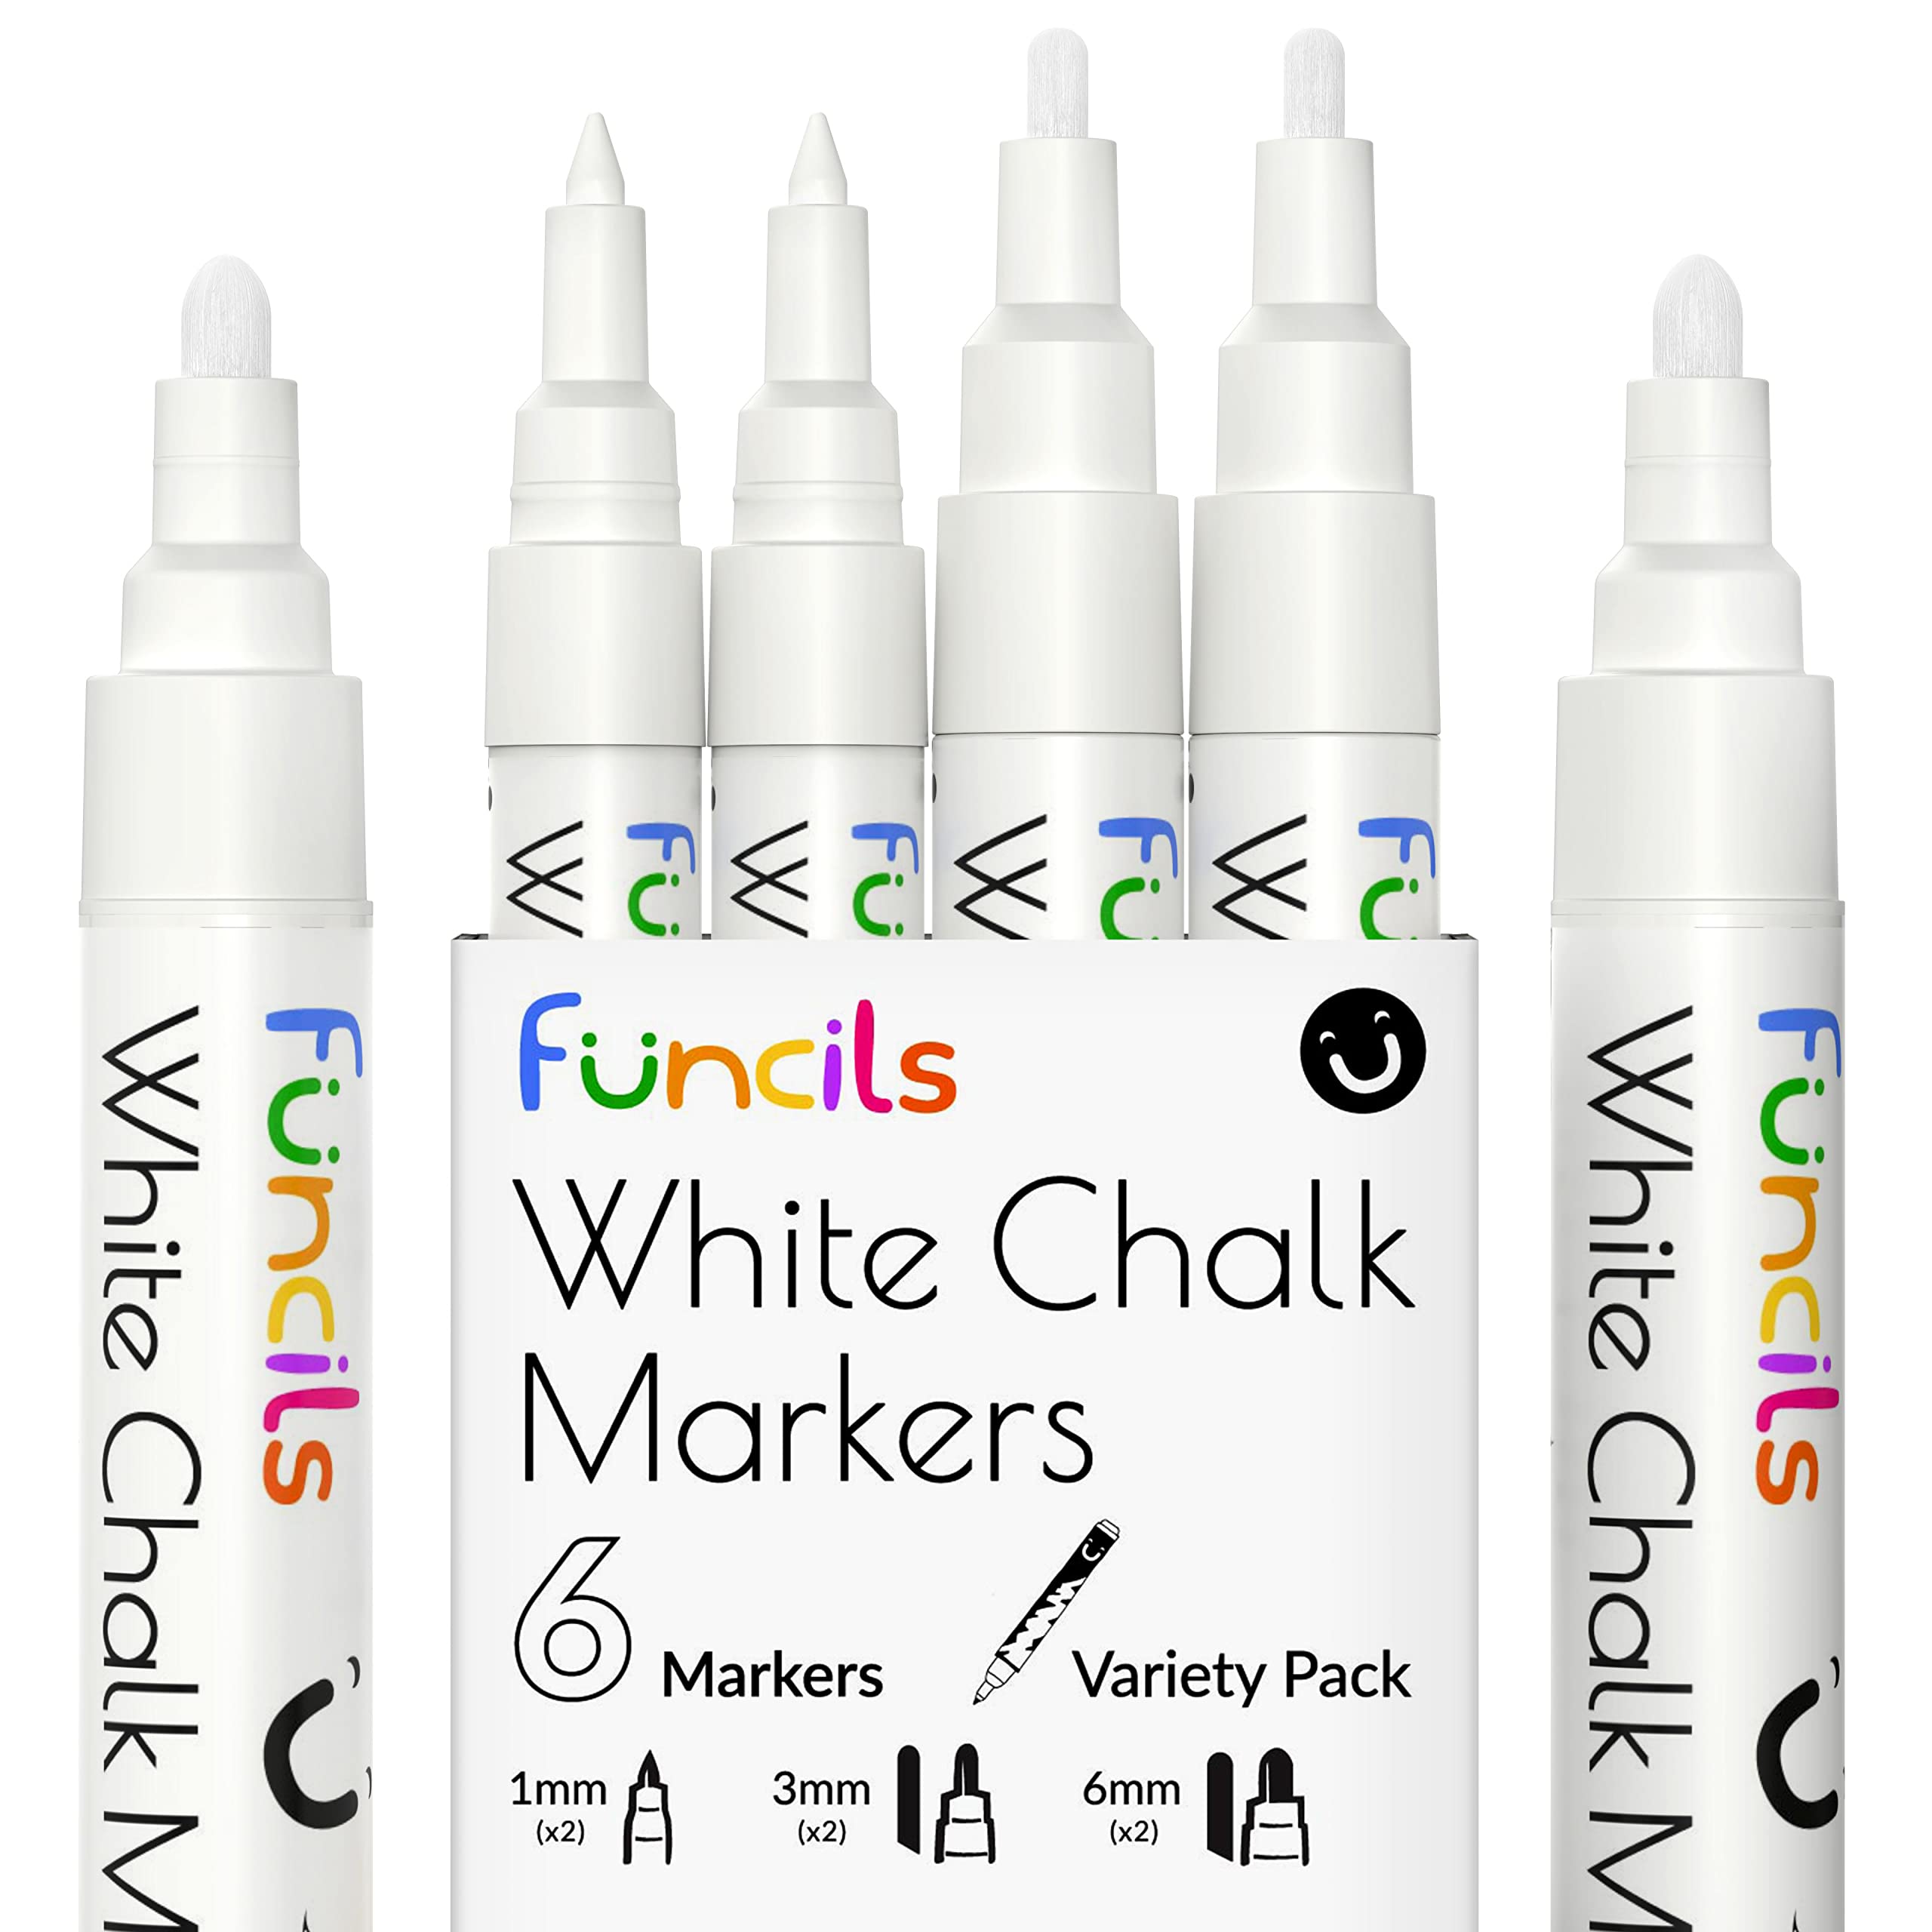 Funcils White Chalk Markers for Chalkboard Signs, Blackboard